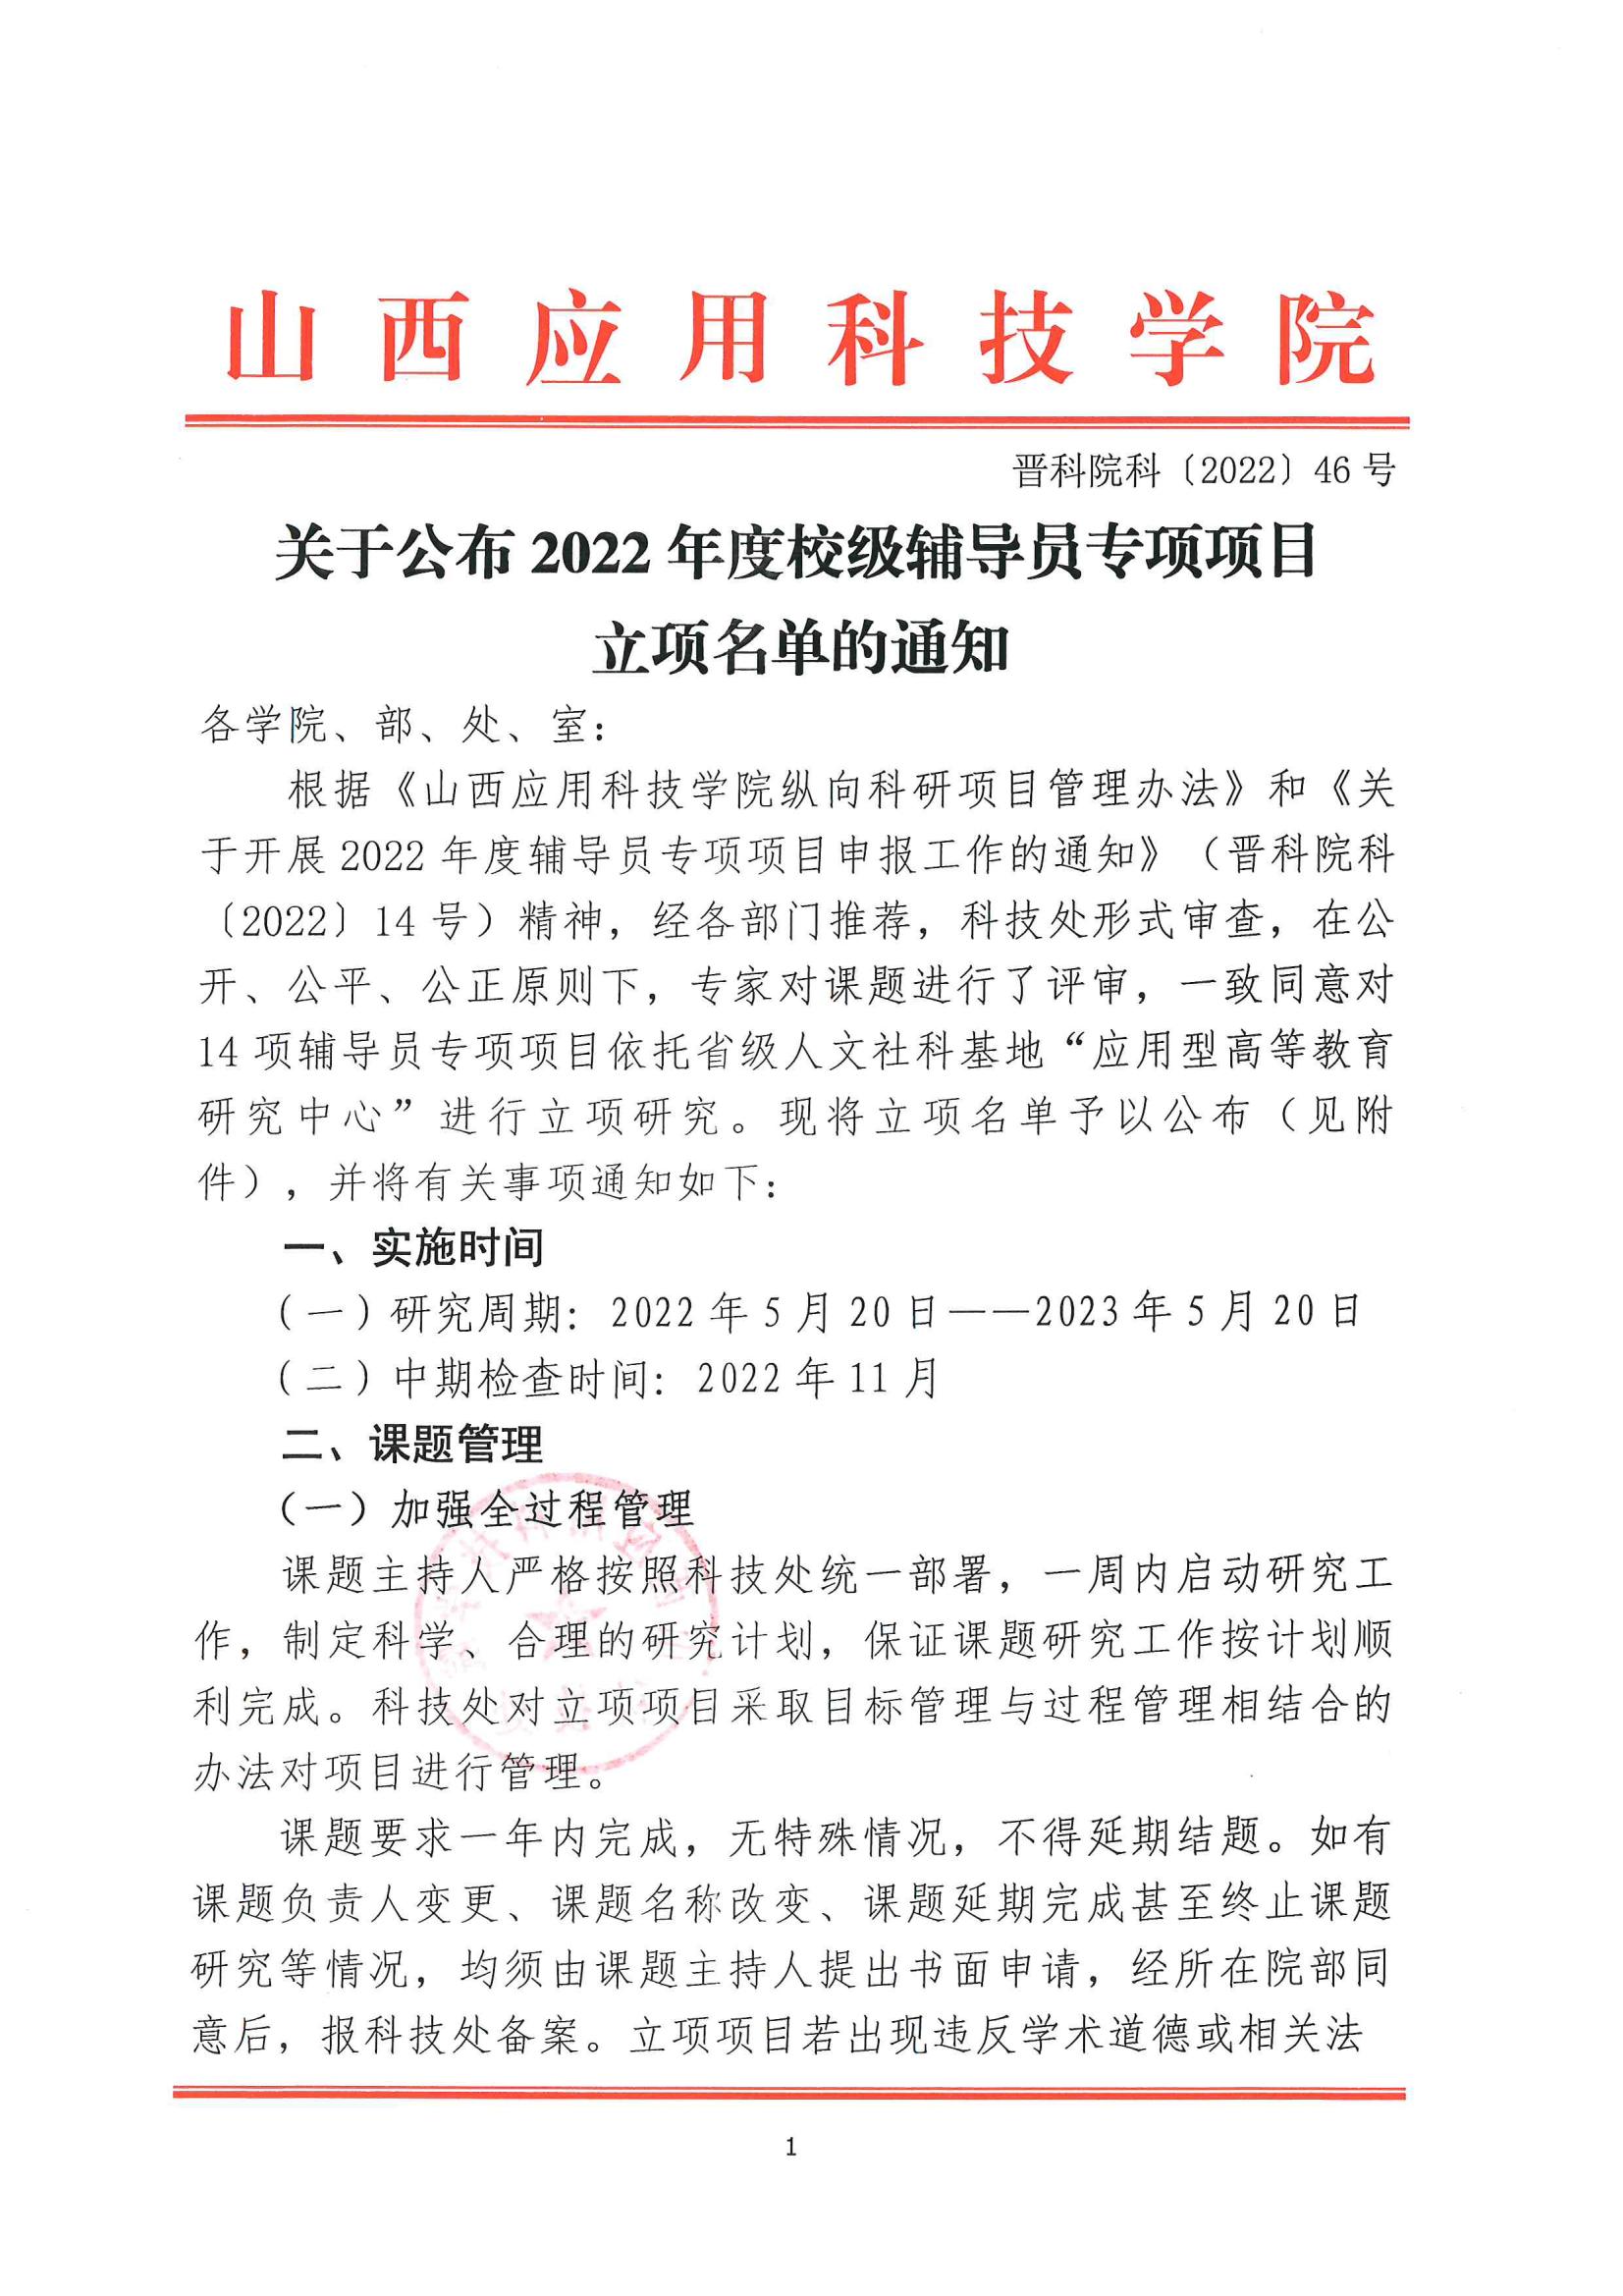 晋科院科〔2022〕46号-关于公布2022年校级辅导员专项项目立项名单的通知_00